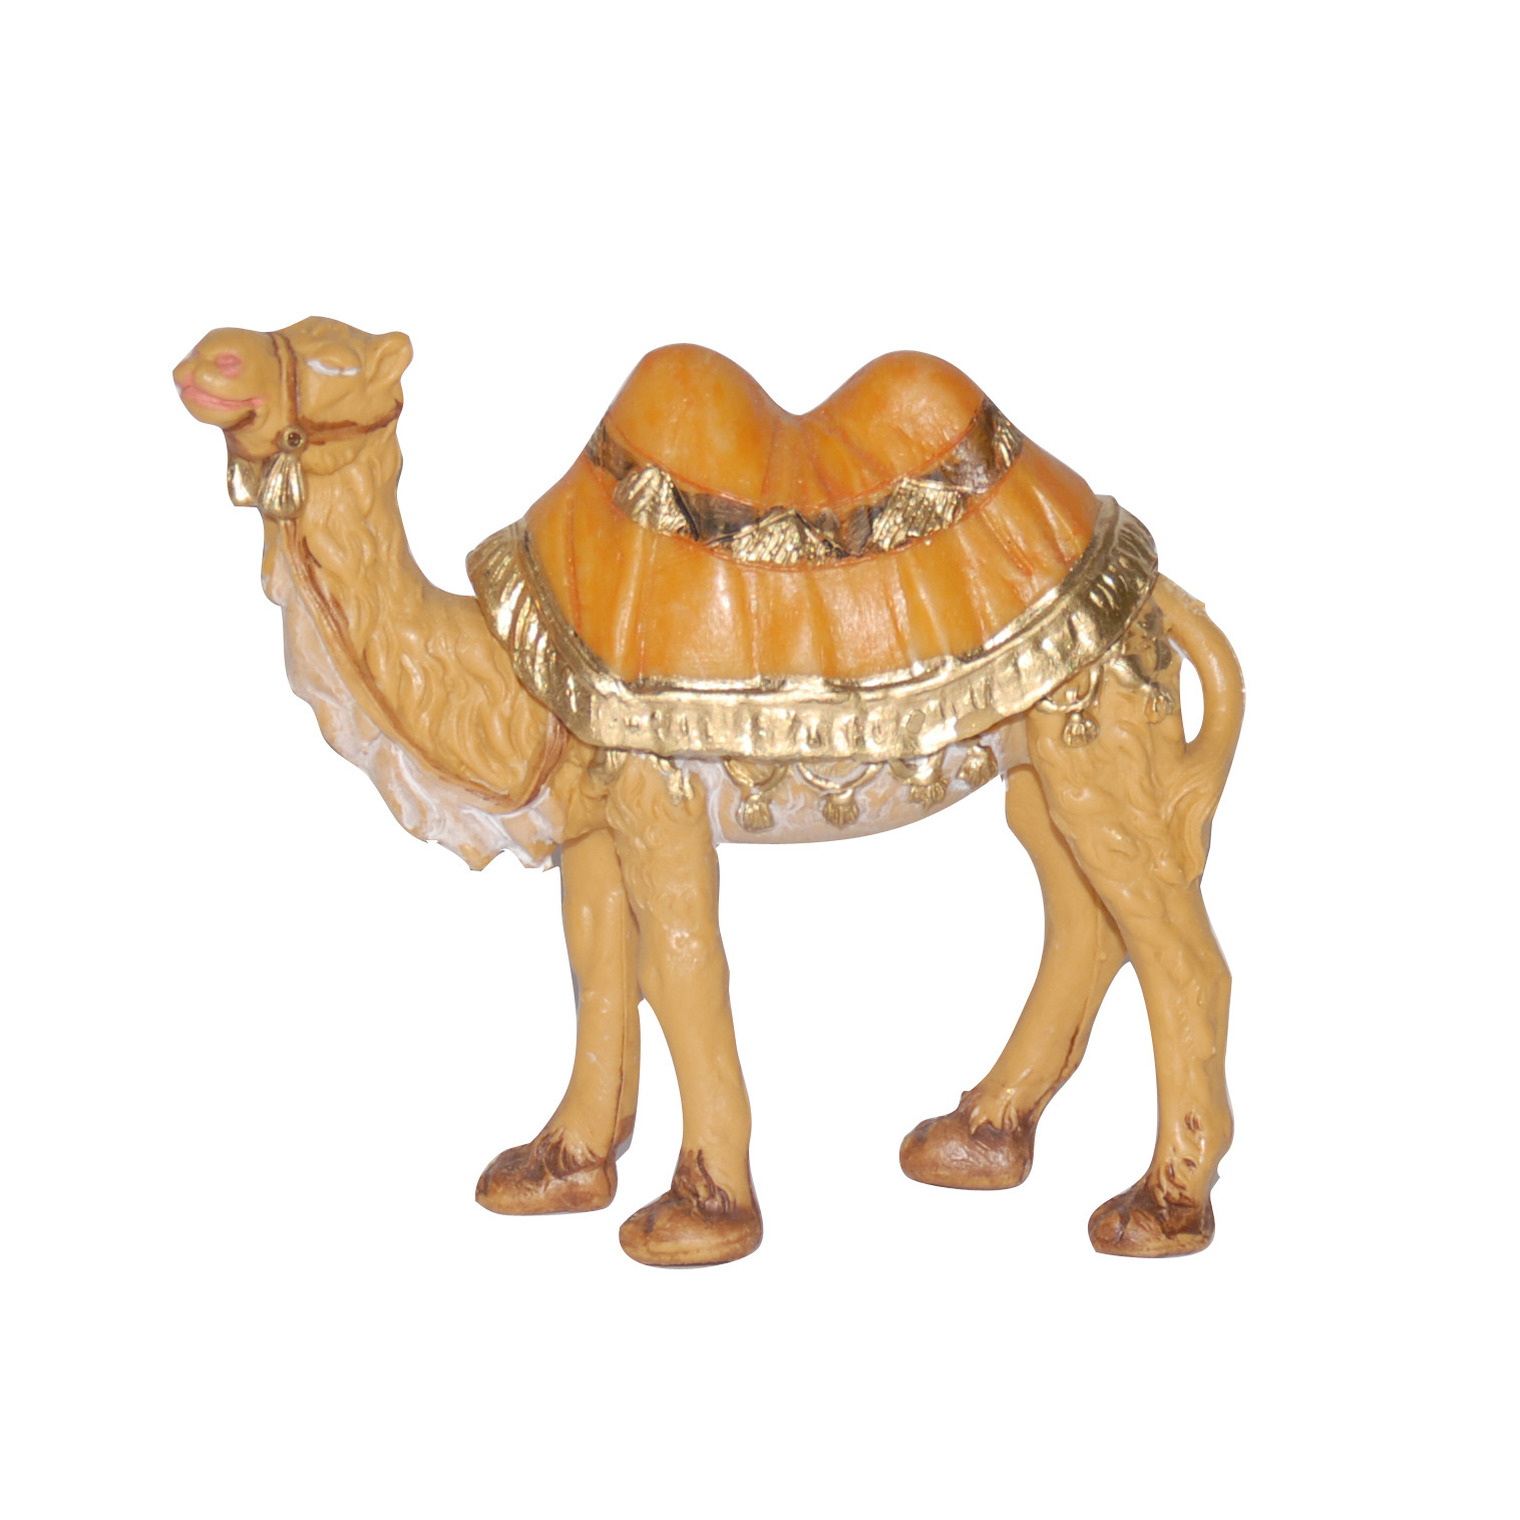 Euromarchi kameel miniatuur beeldje 10 cm dierenbeeldjes